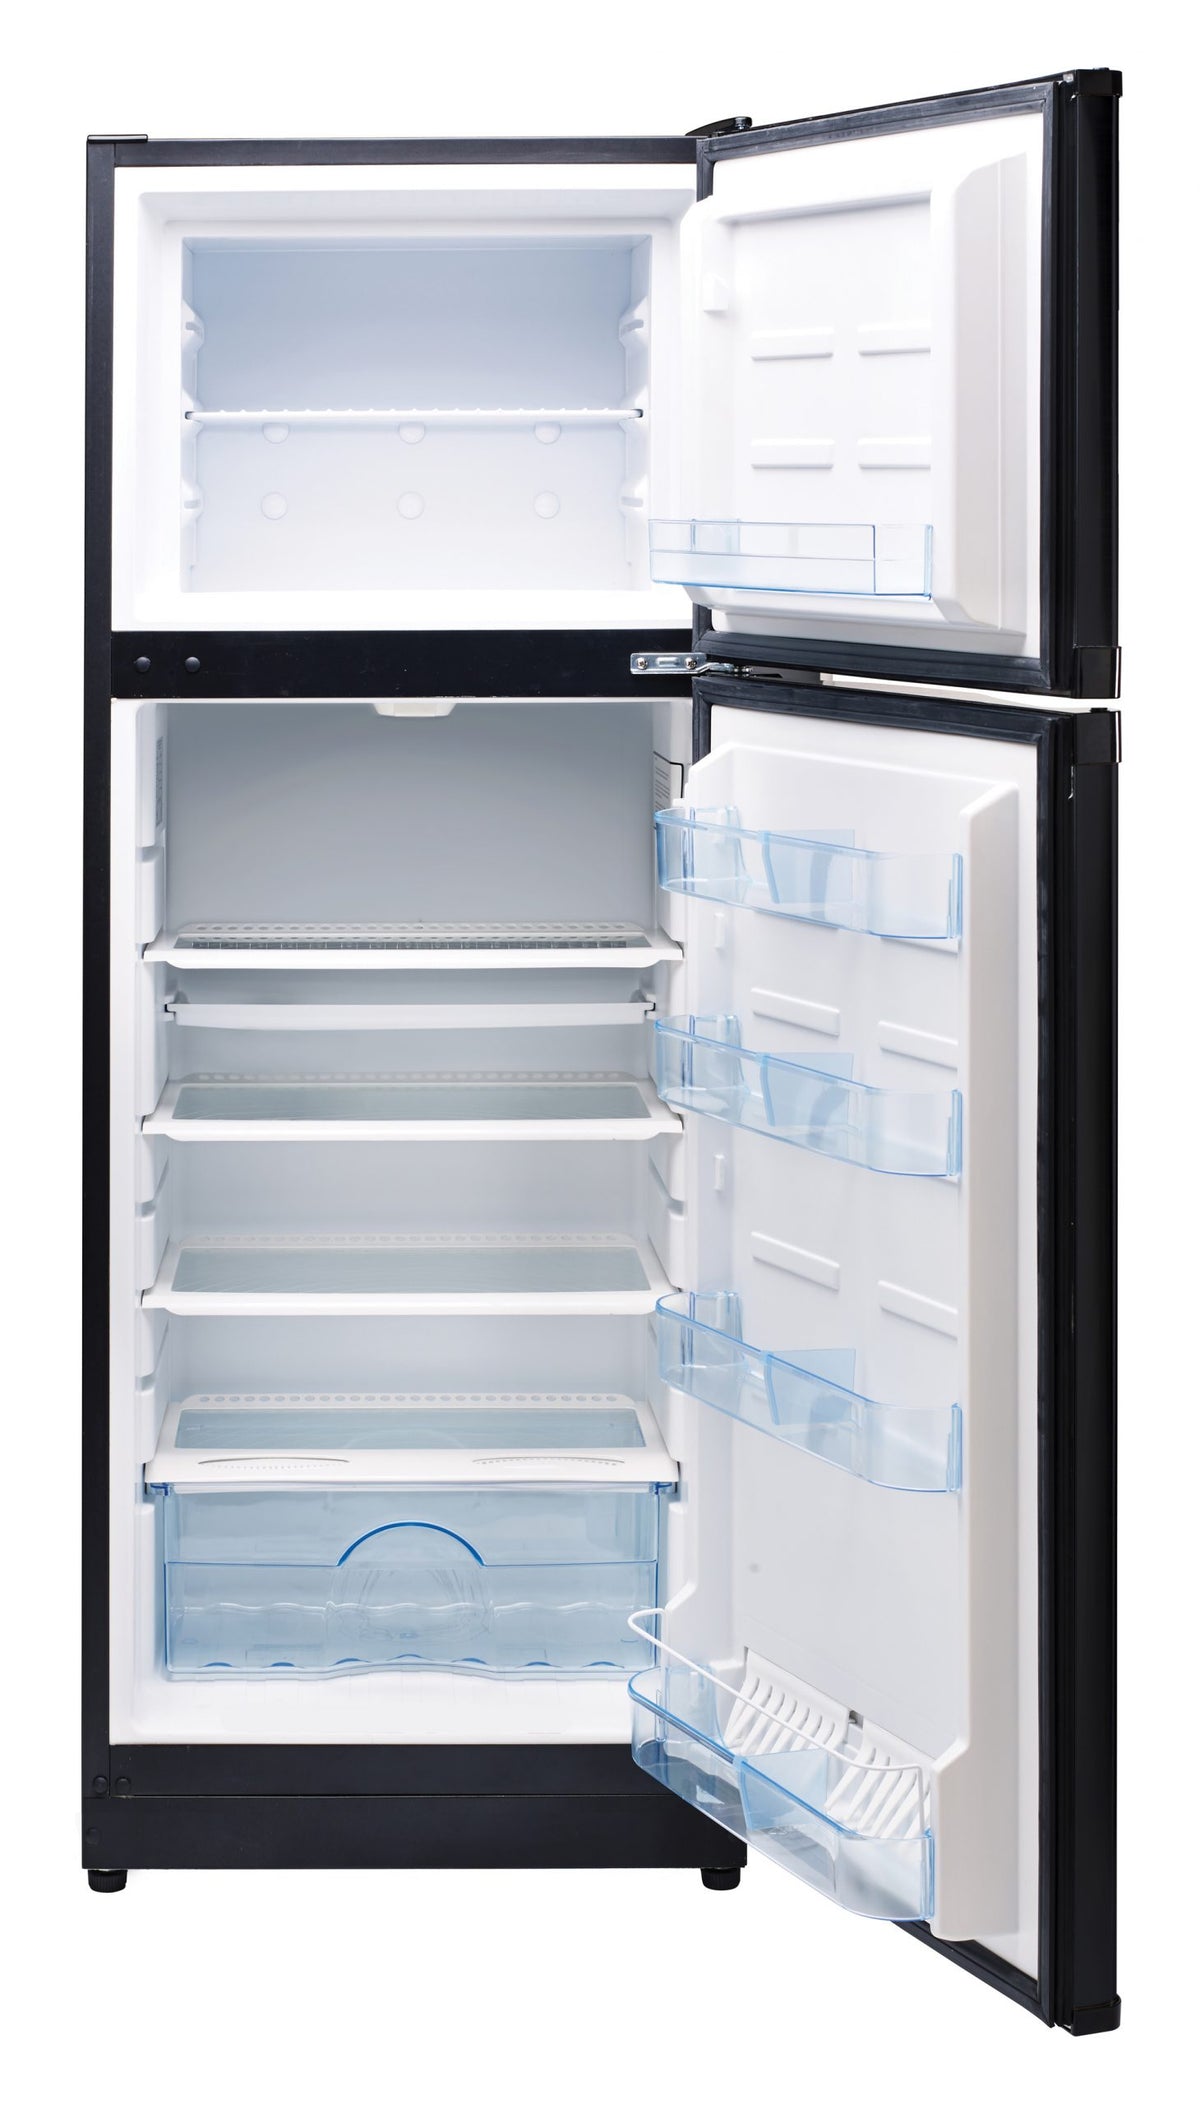 Unique 290 Litre Black 12/24 DC Refrigerator/Freezer Serial #